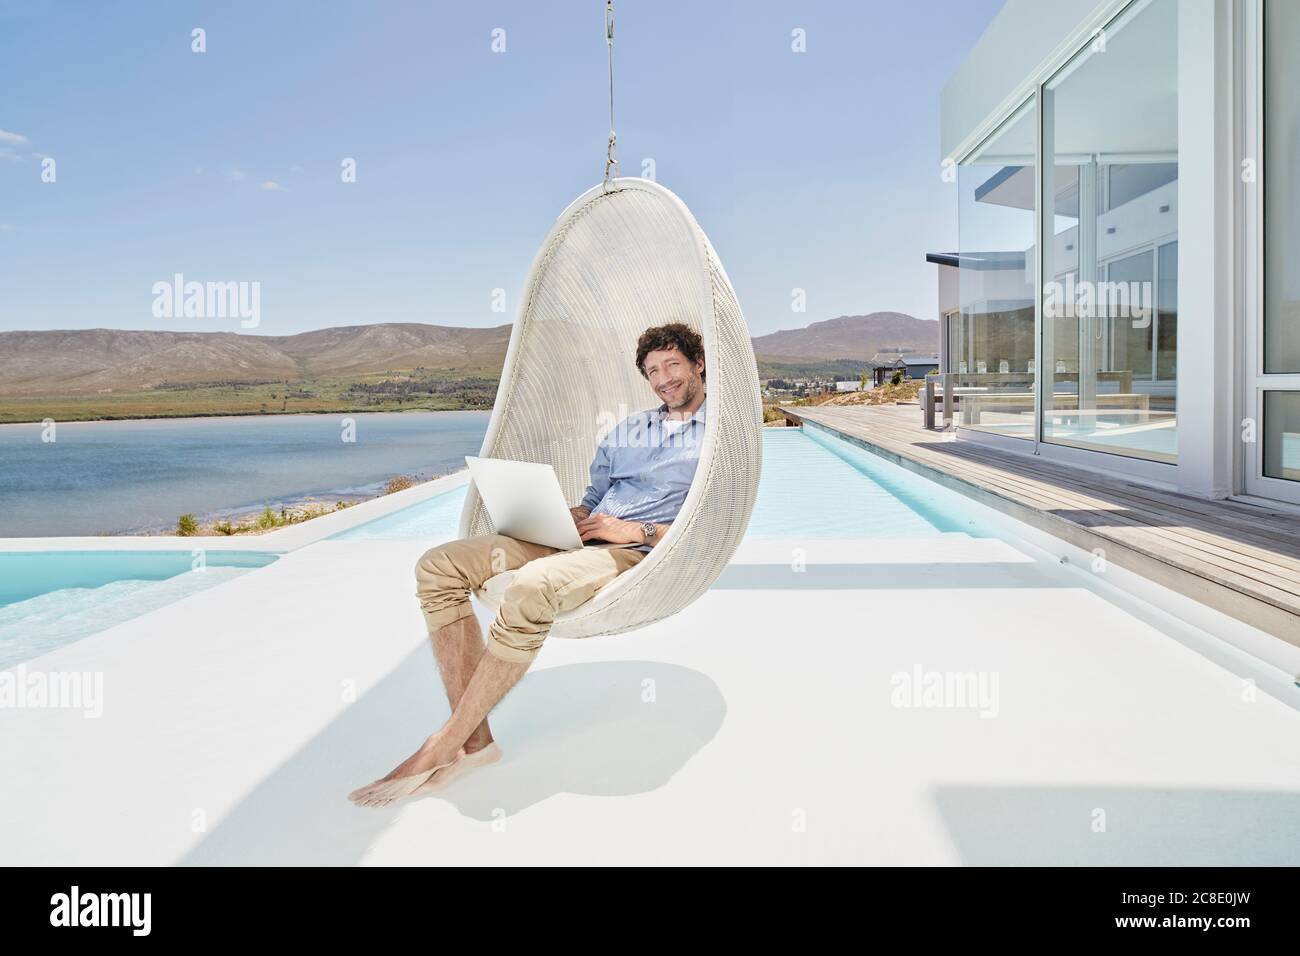 Uomo seduto in sedia a sospensione sopra la piscina utilizzando un computer portatile Foto Stock